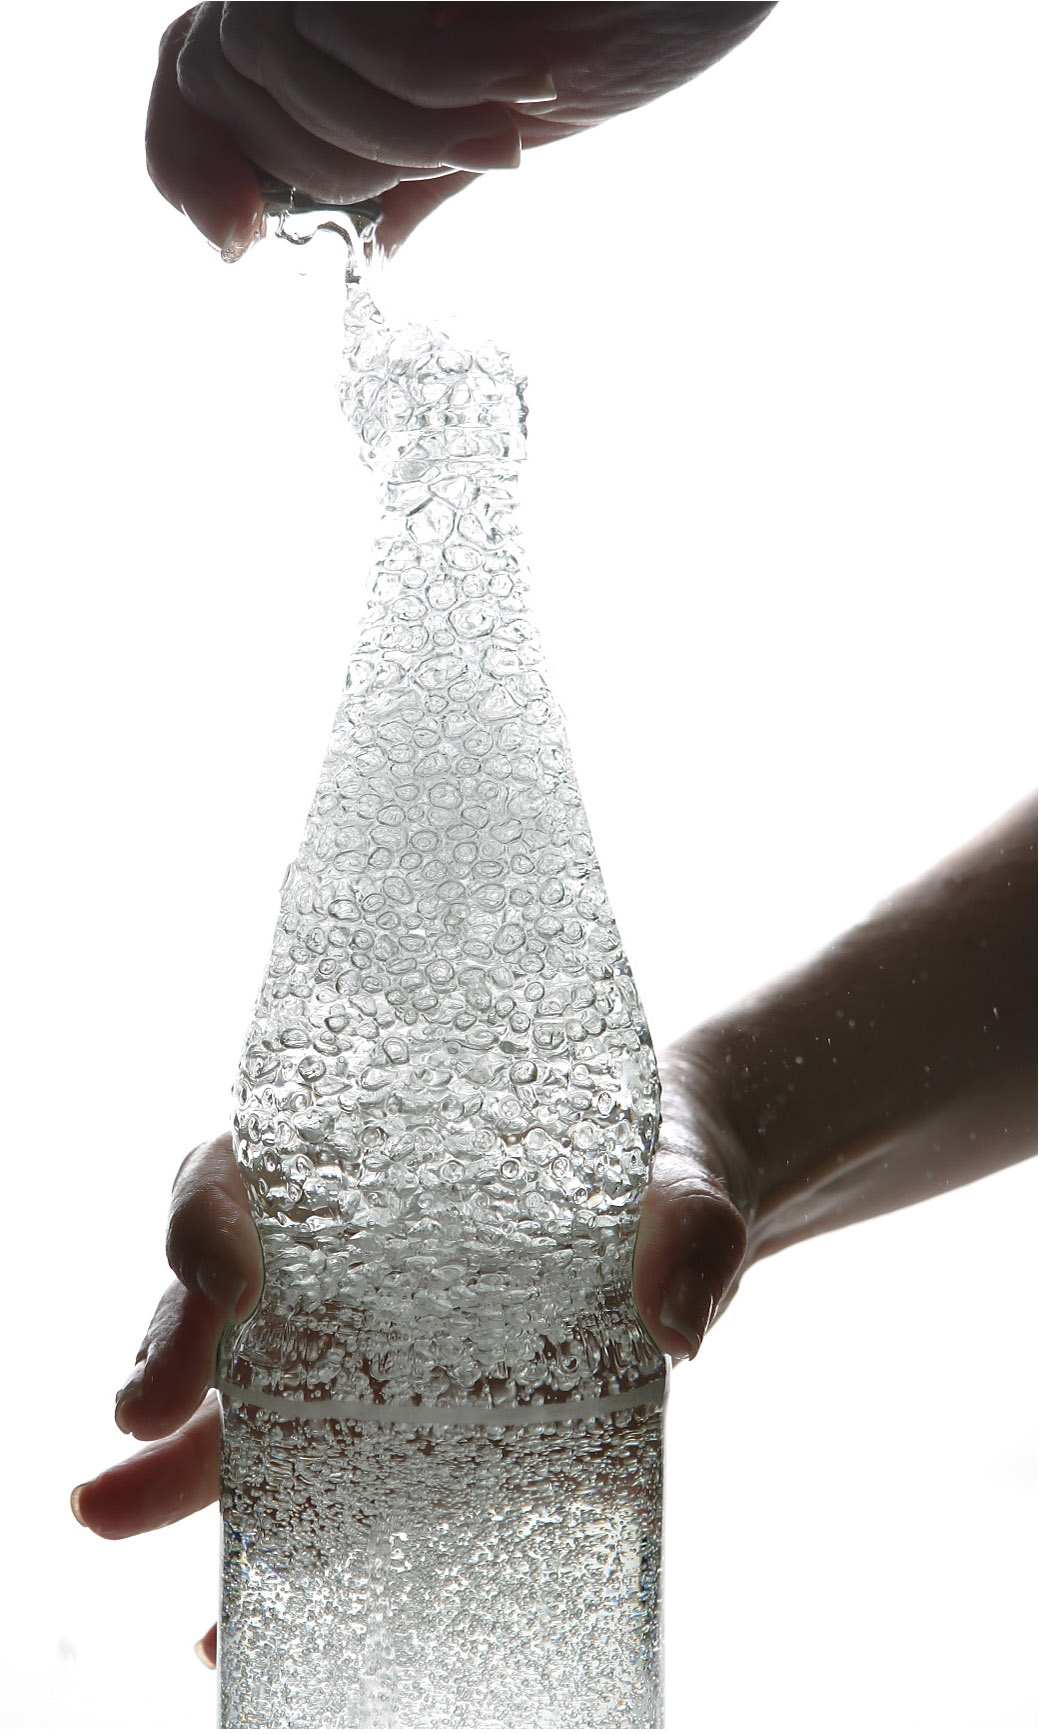 За даними ООН, близько 25% українців п’ють не досить чисту воду. Як визначити якість споживаної води? Фото: Illustration by Andreas Rentz/Getty Images